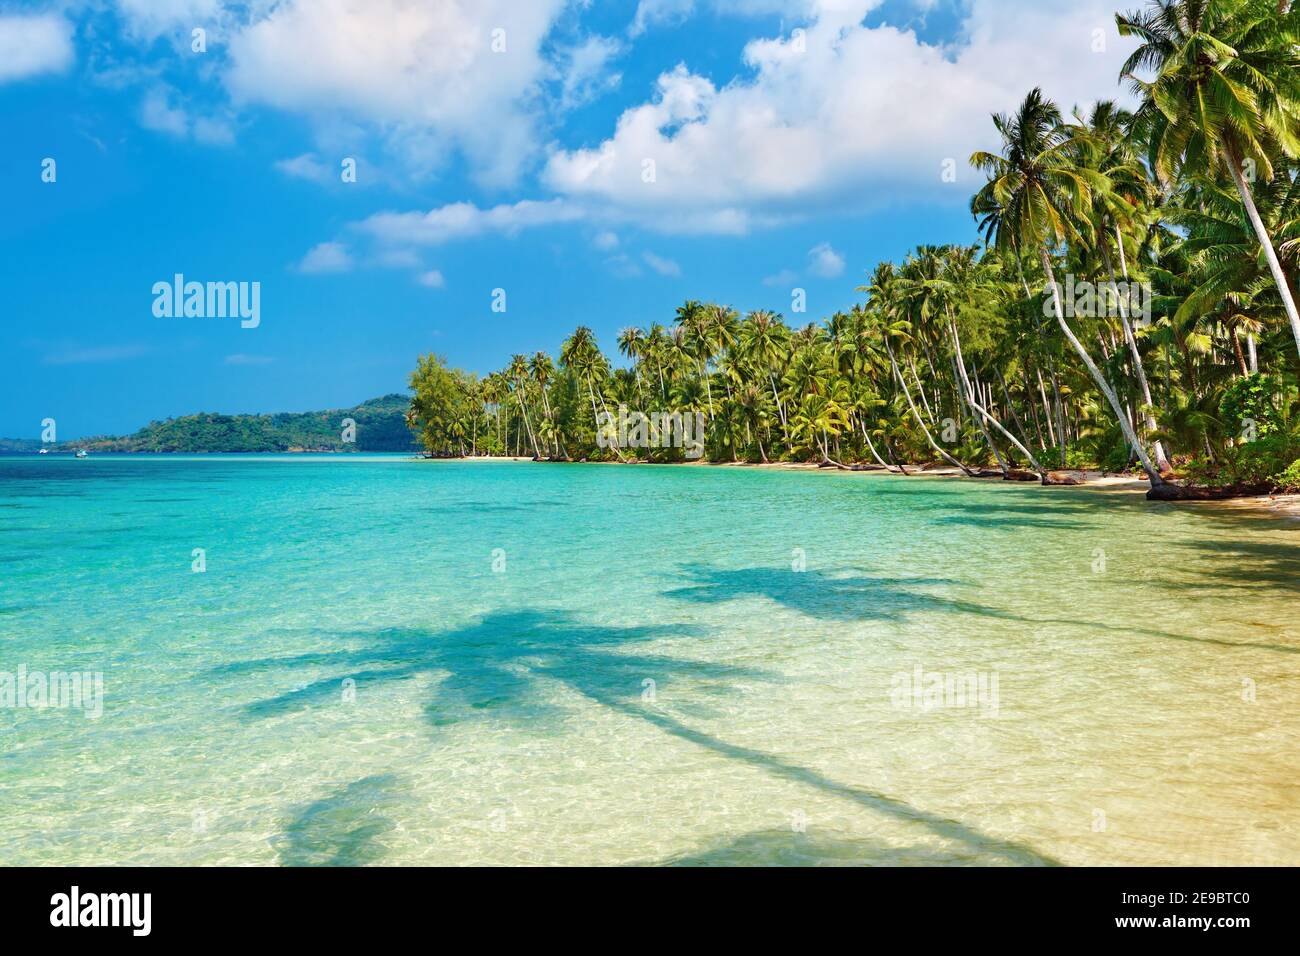 Kokosnuss Palmen am Strand, Insel Kood, Thailand Stockfoto